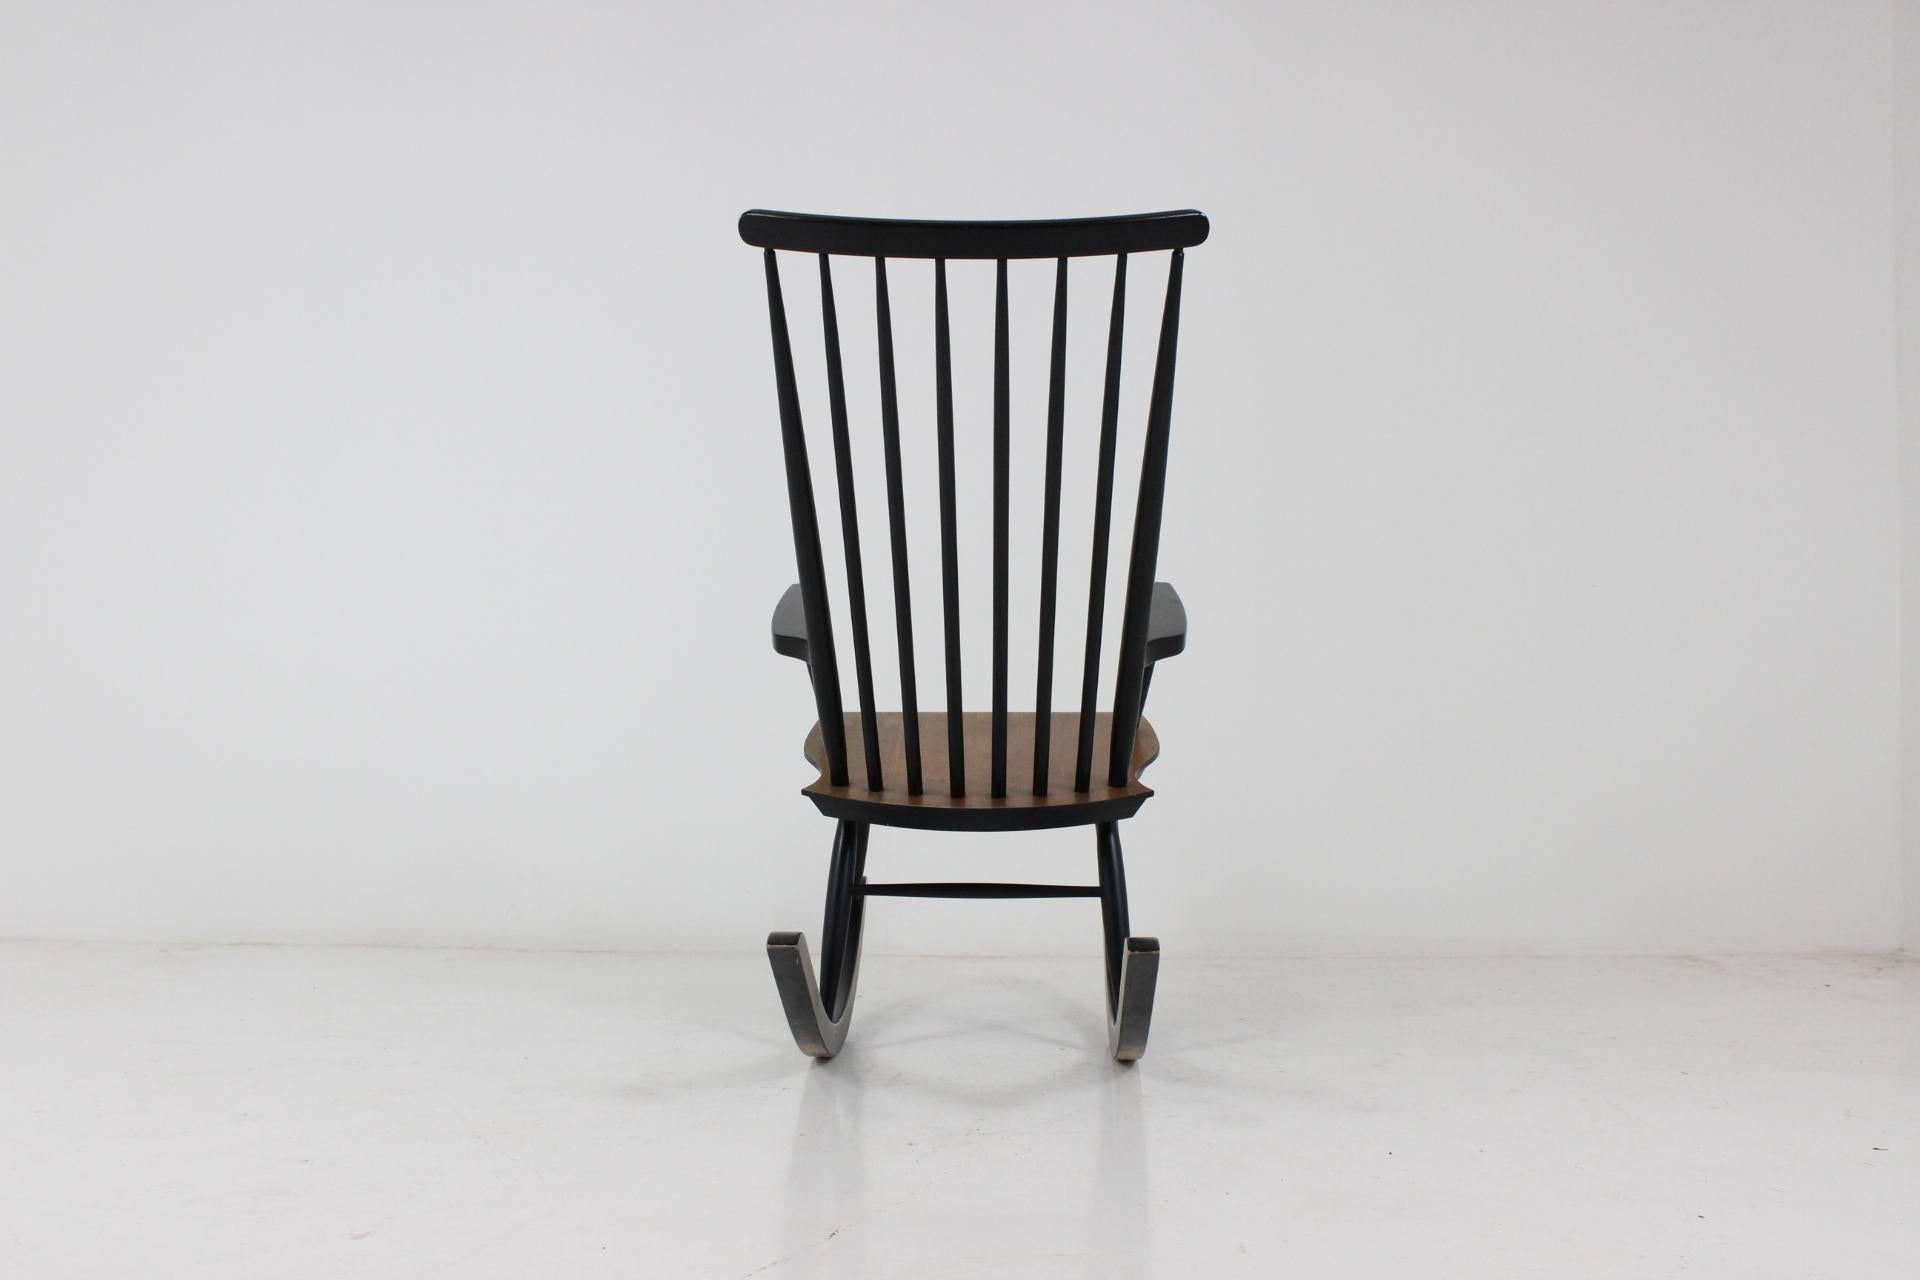 finnish chair